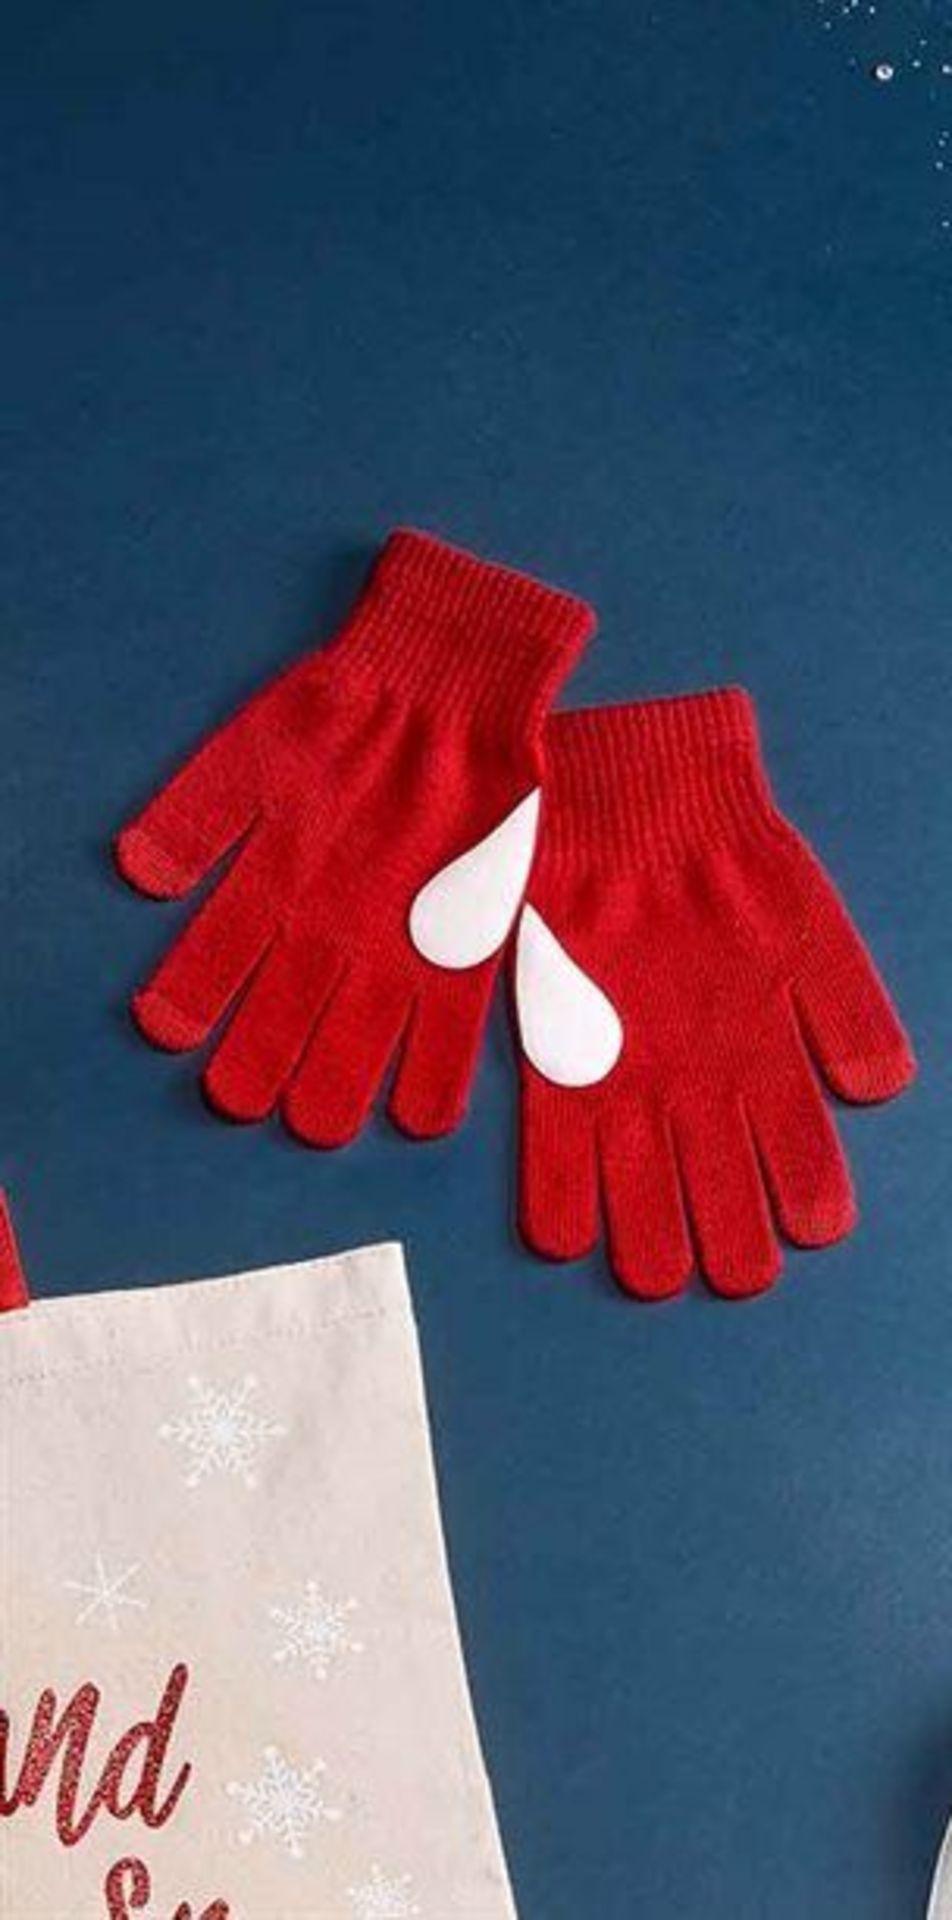 Pallet of Yuletide Novelty Gloves - Image 2 of 2